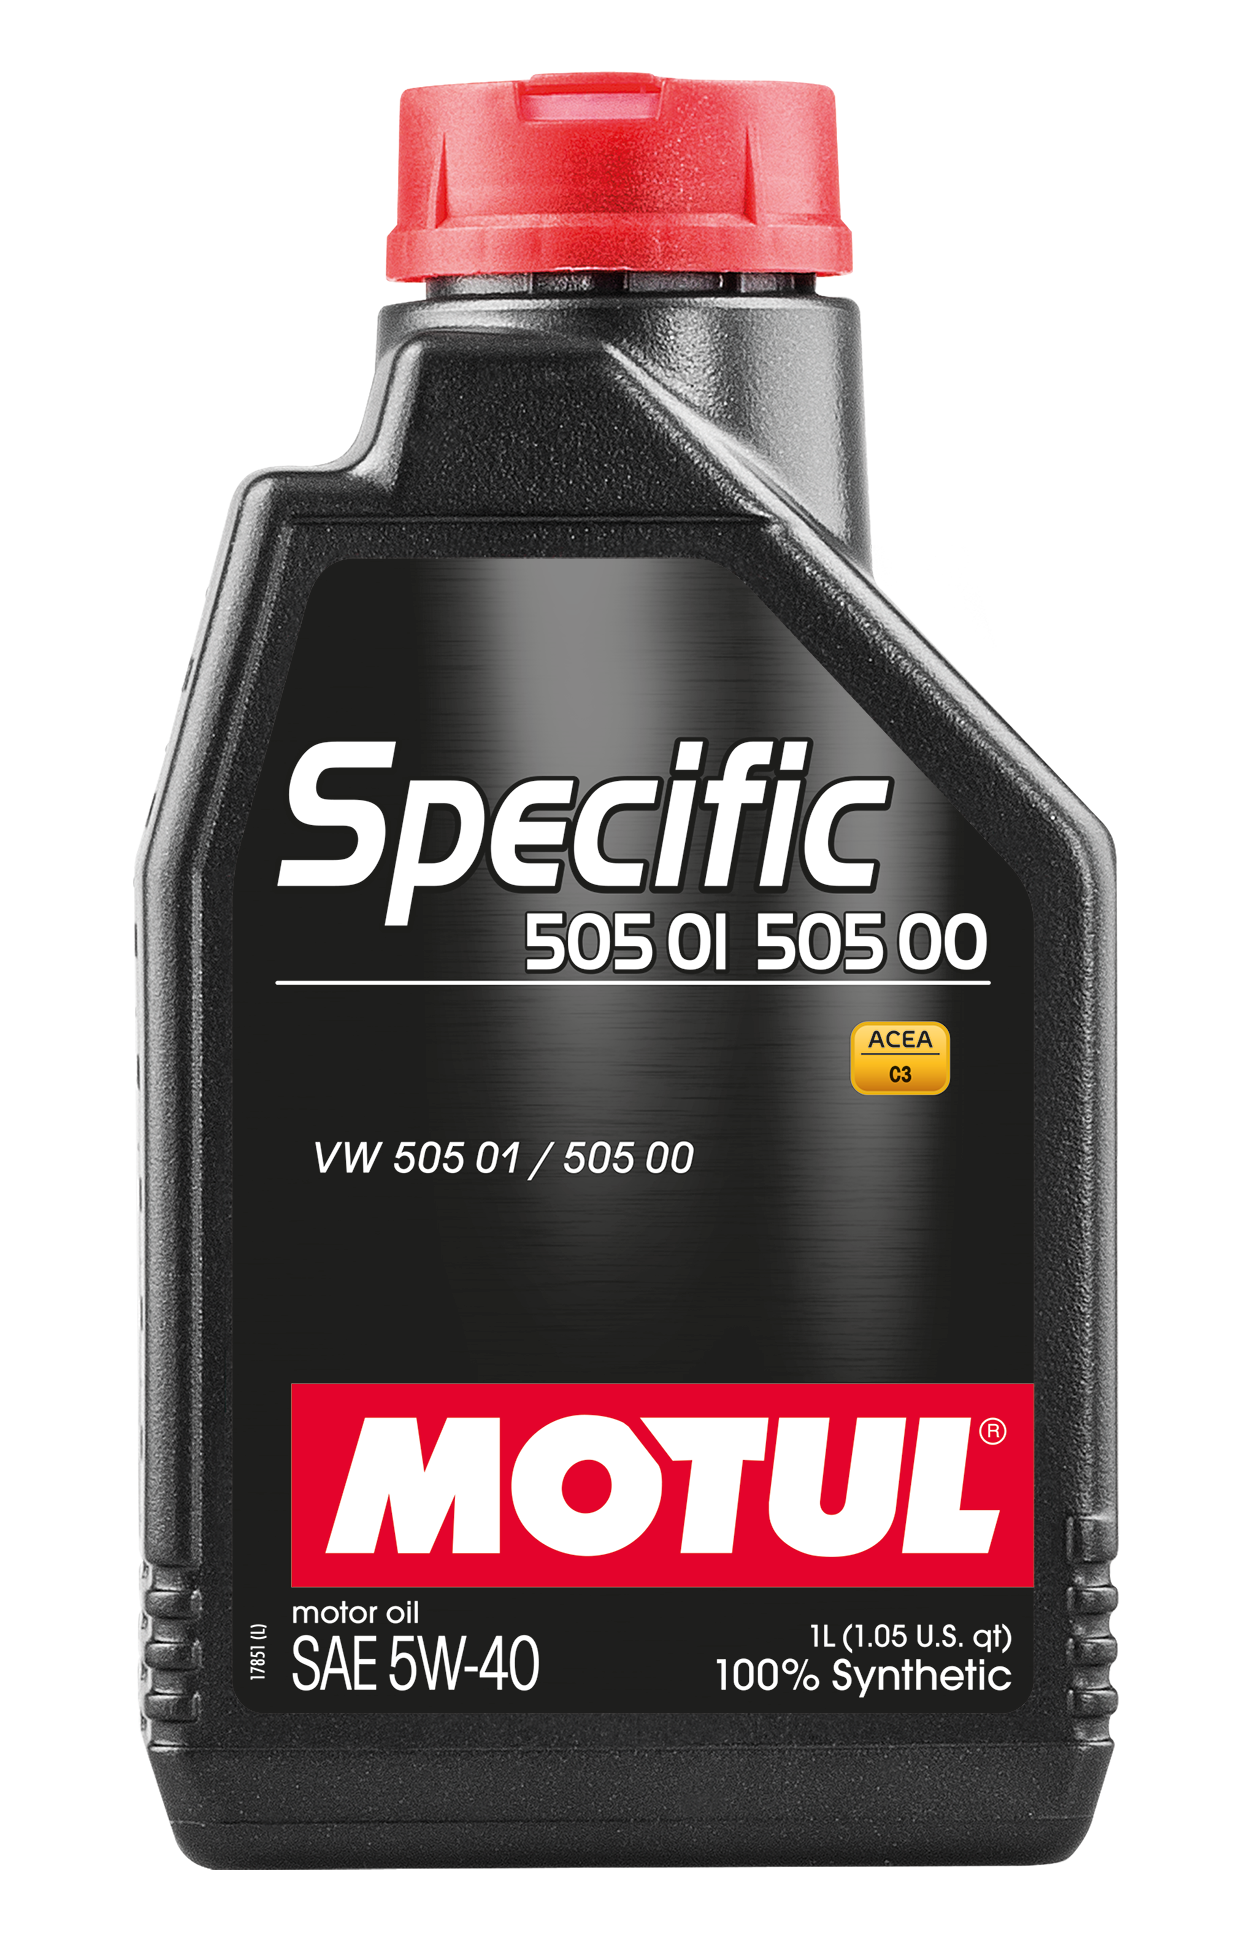 Motul SPECIFIC 505 01 502 00 5W-40, 1 liter